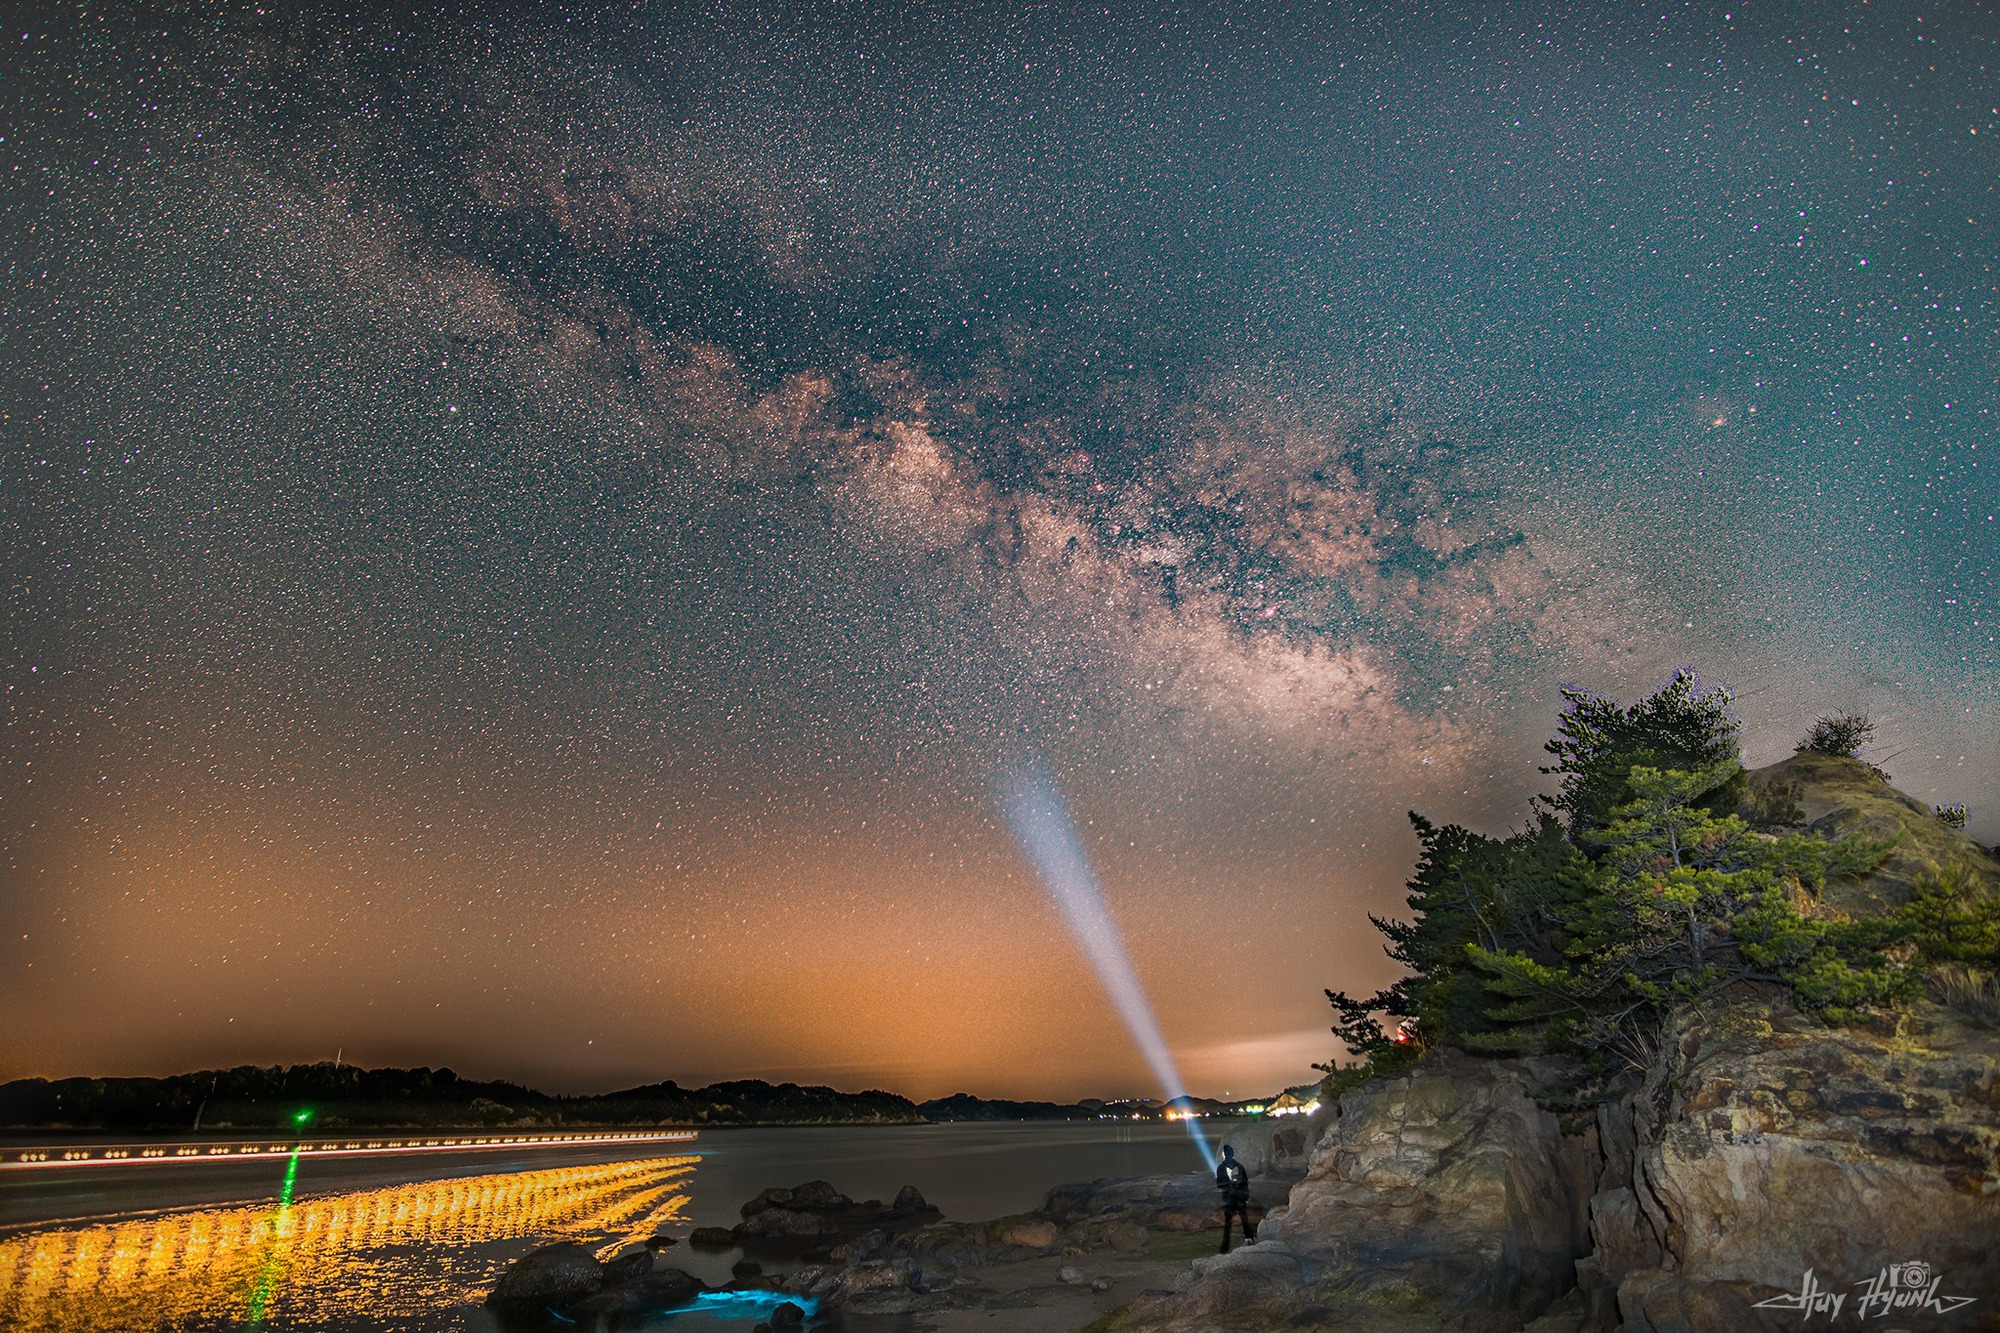 Đẹp mê hồn bộ ảnh chụp bầu trời đêm Nhật Bản của chàng trai miền Tây   - Ảnh 8.